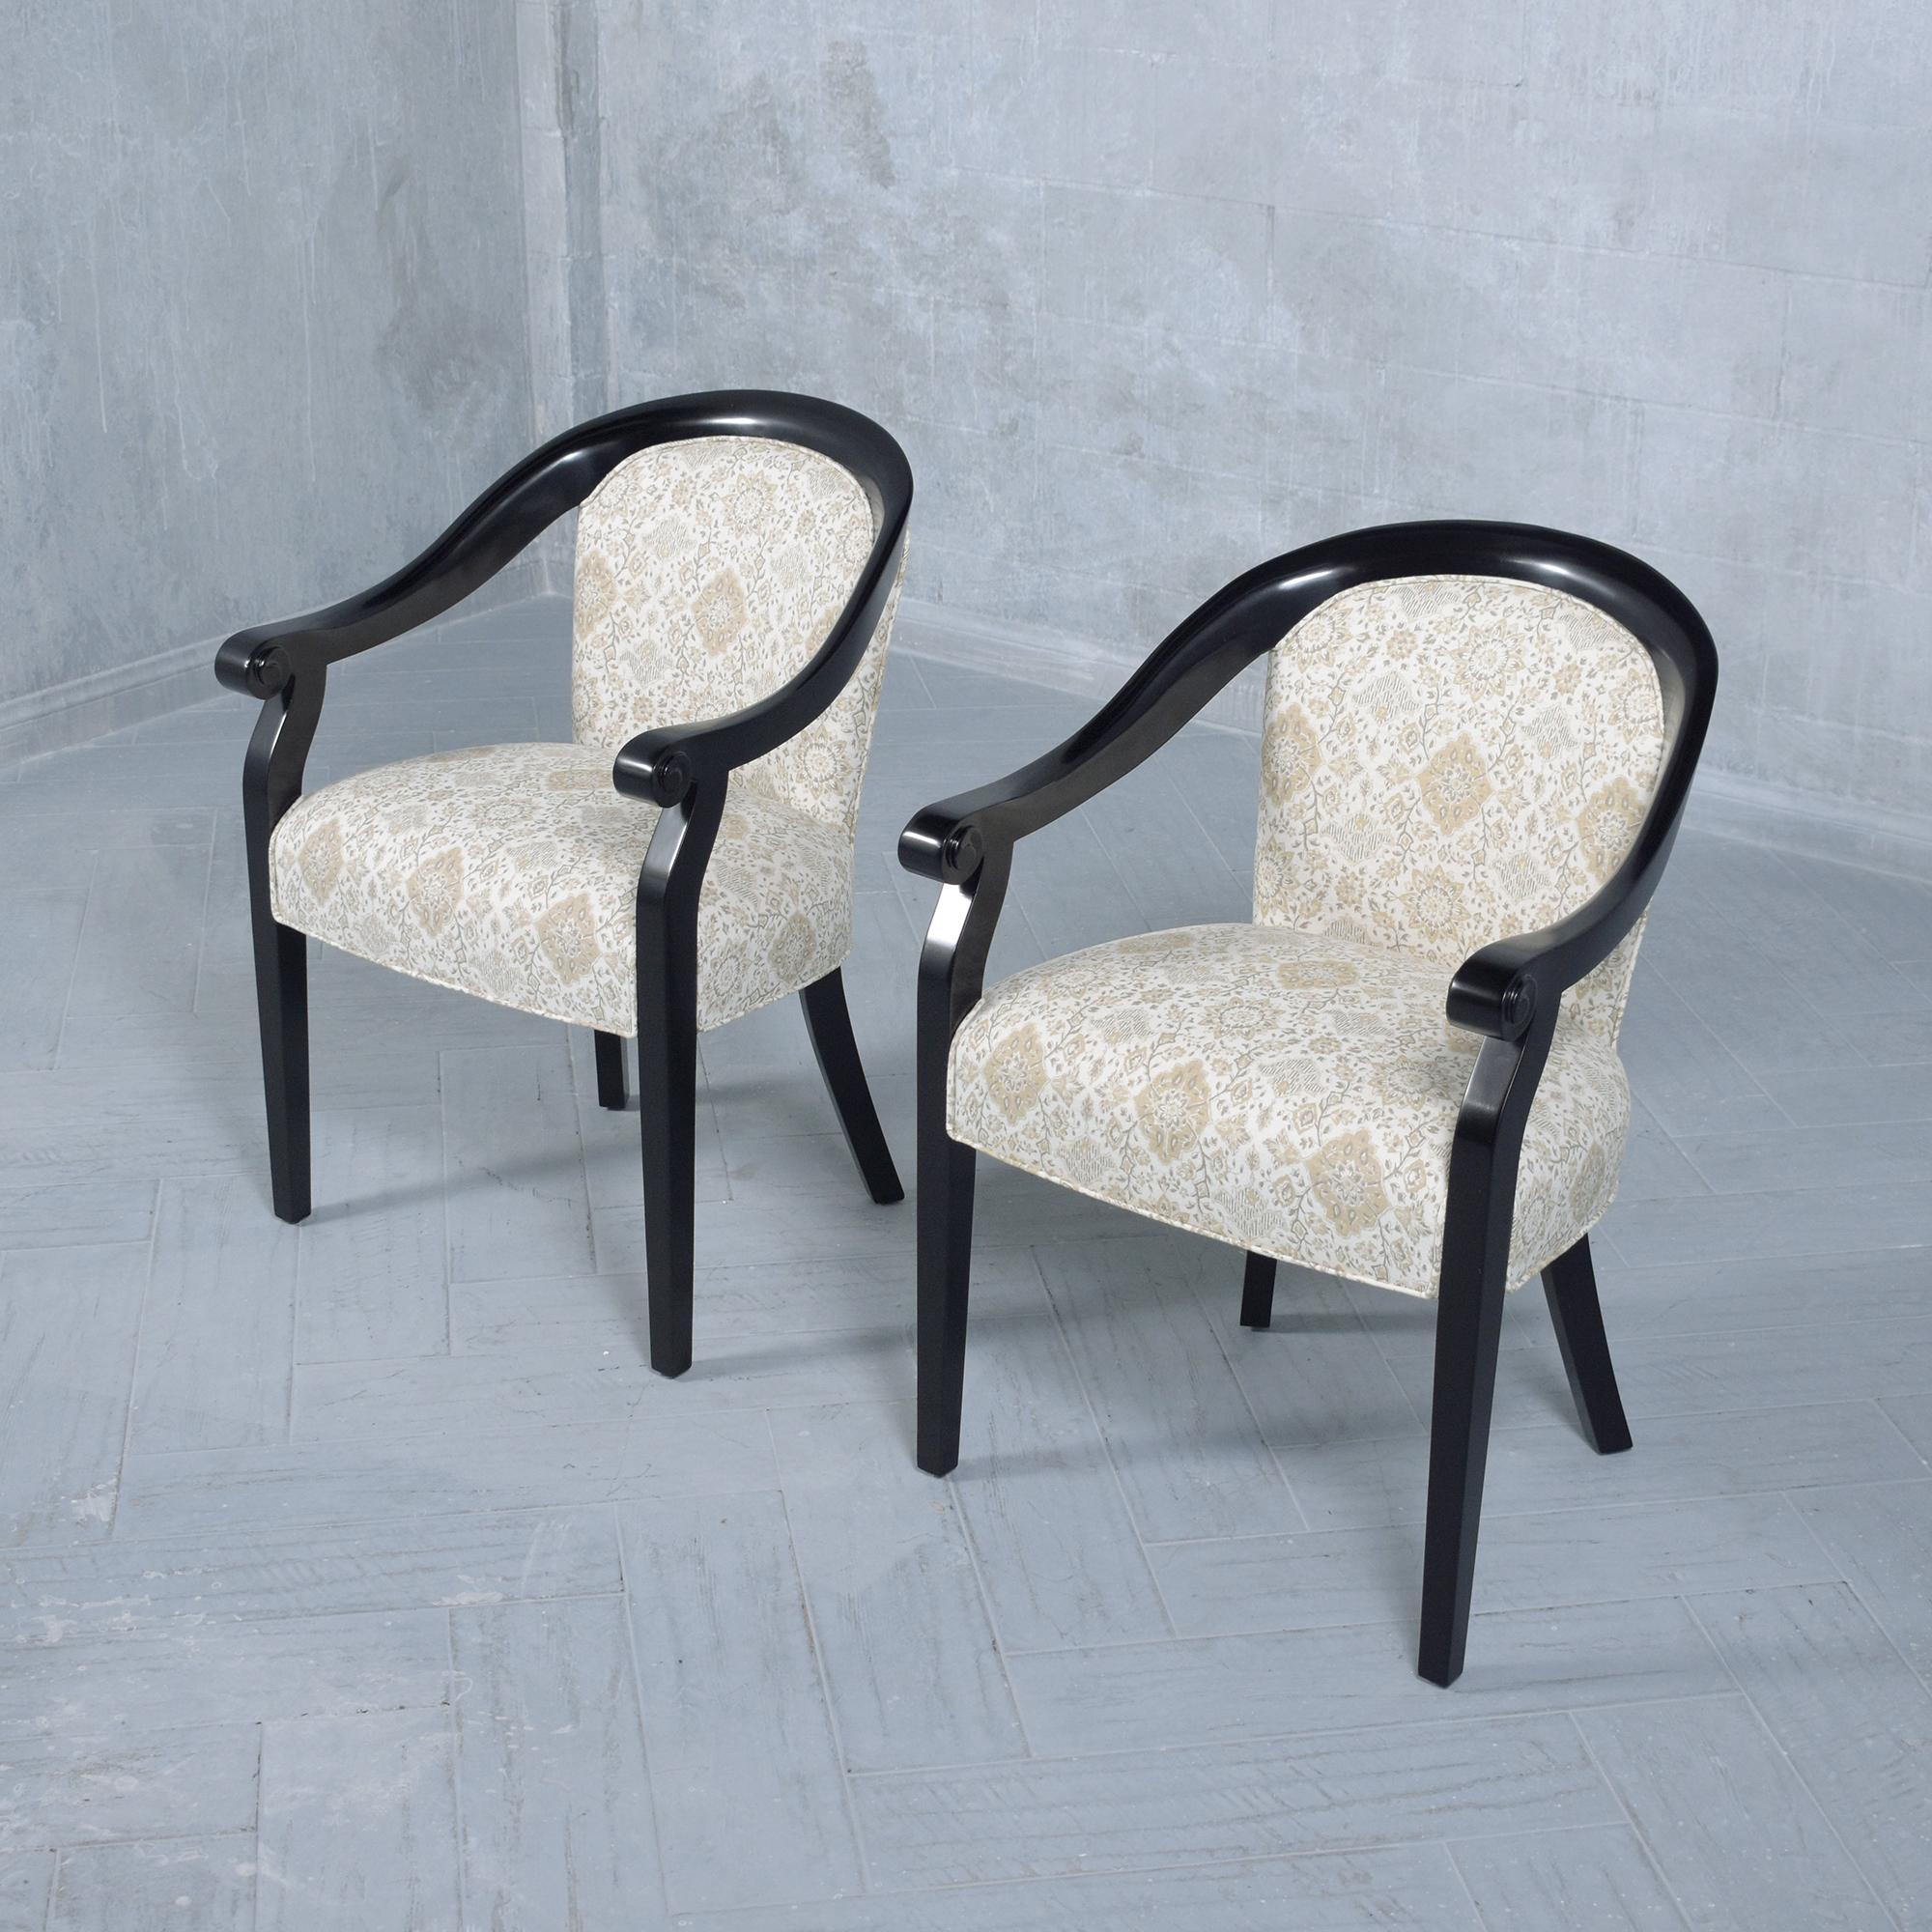 Plongez dans l'élégance intemporelle des années 1960 avec notre paire de fauteuils Hickory Modern, magnifiquement restaurés pour incarner le luxe et le style du design du milieu du siècle. Ces fauteuils ont été teintés de manière experte dans une